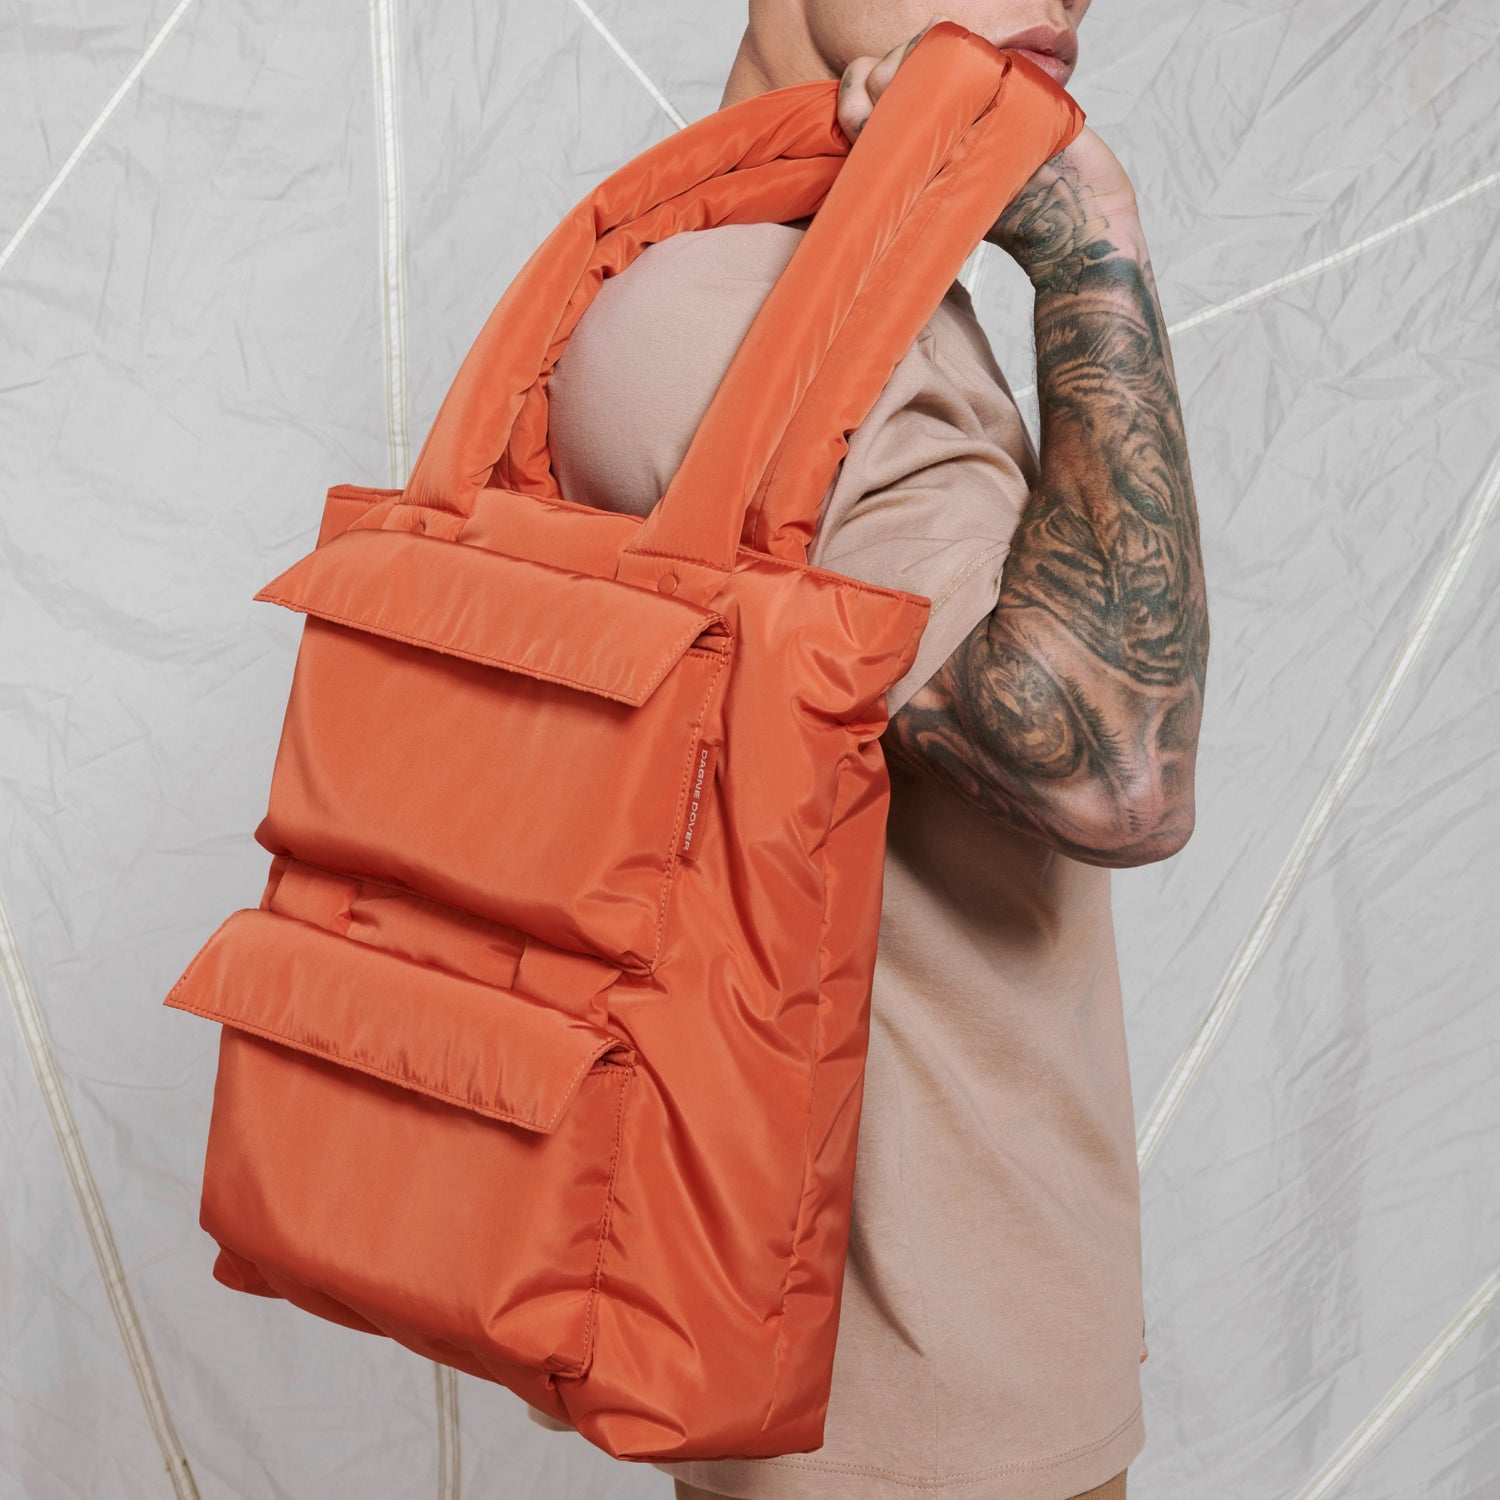 Dagne Dover Orange Backpacks for Women